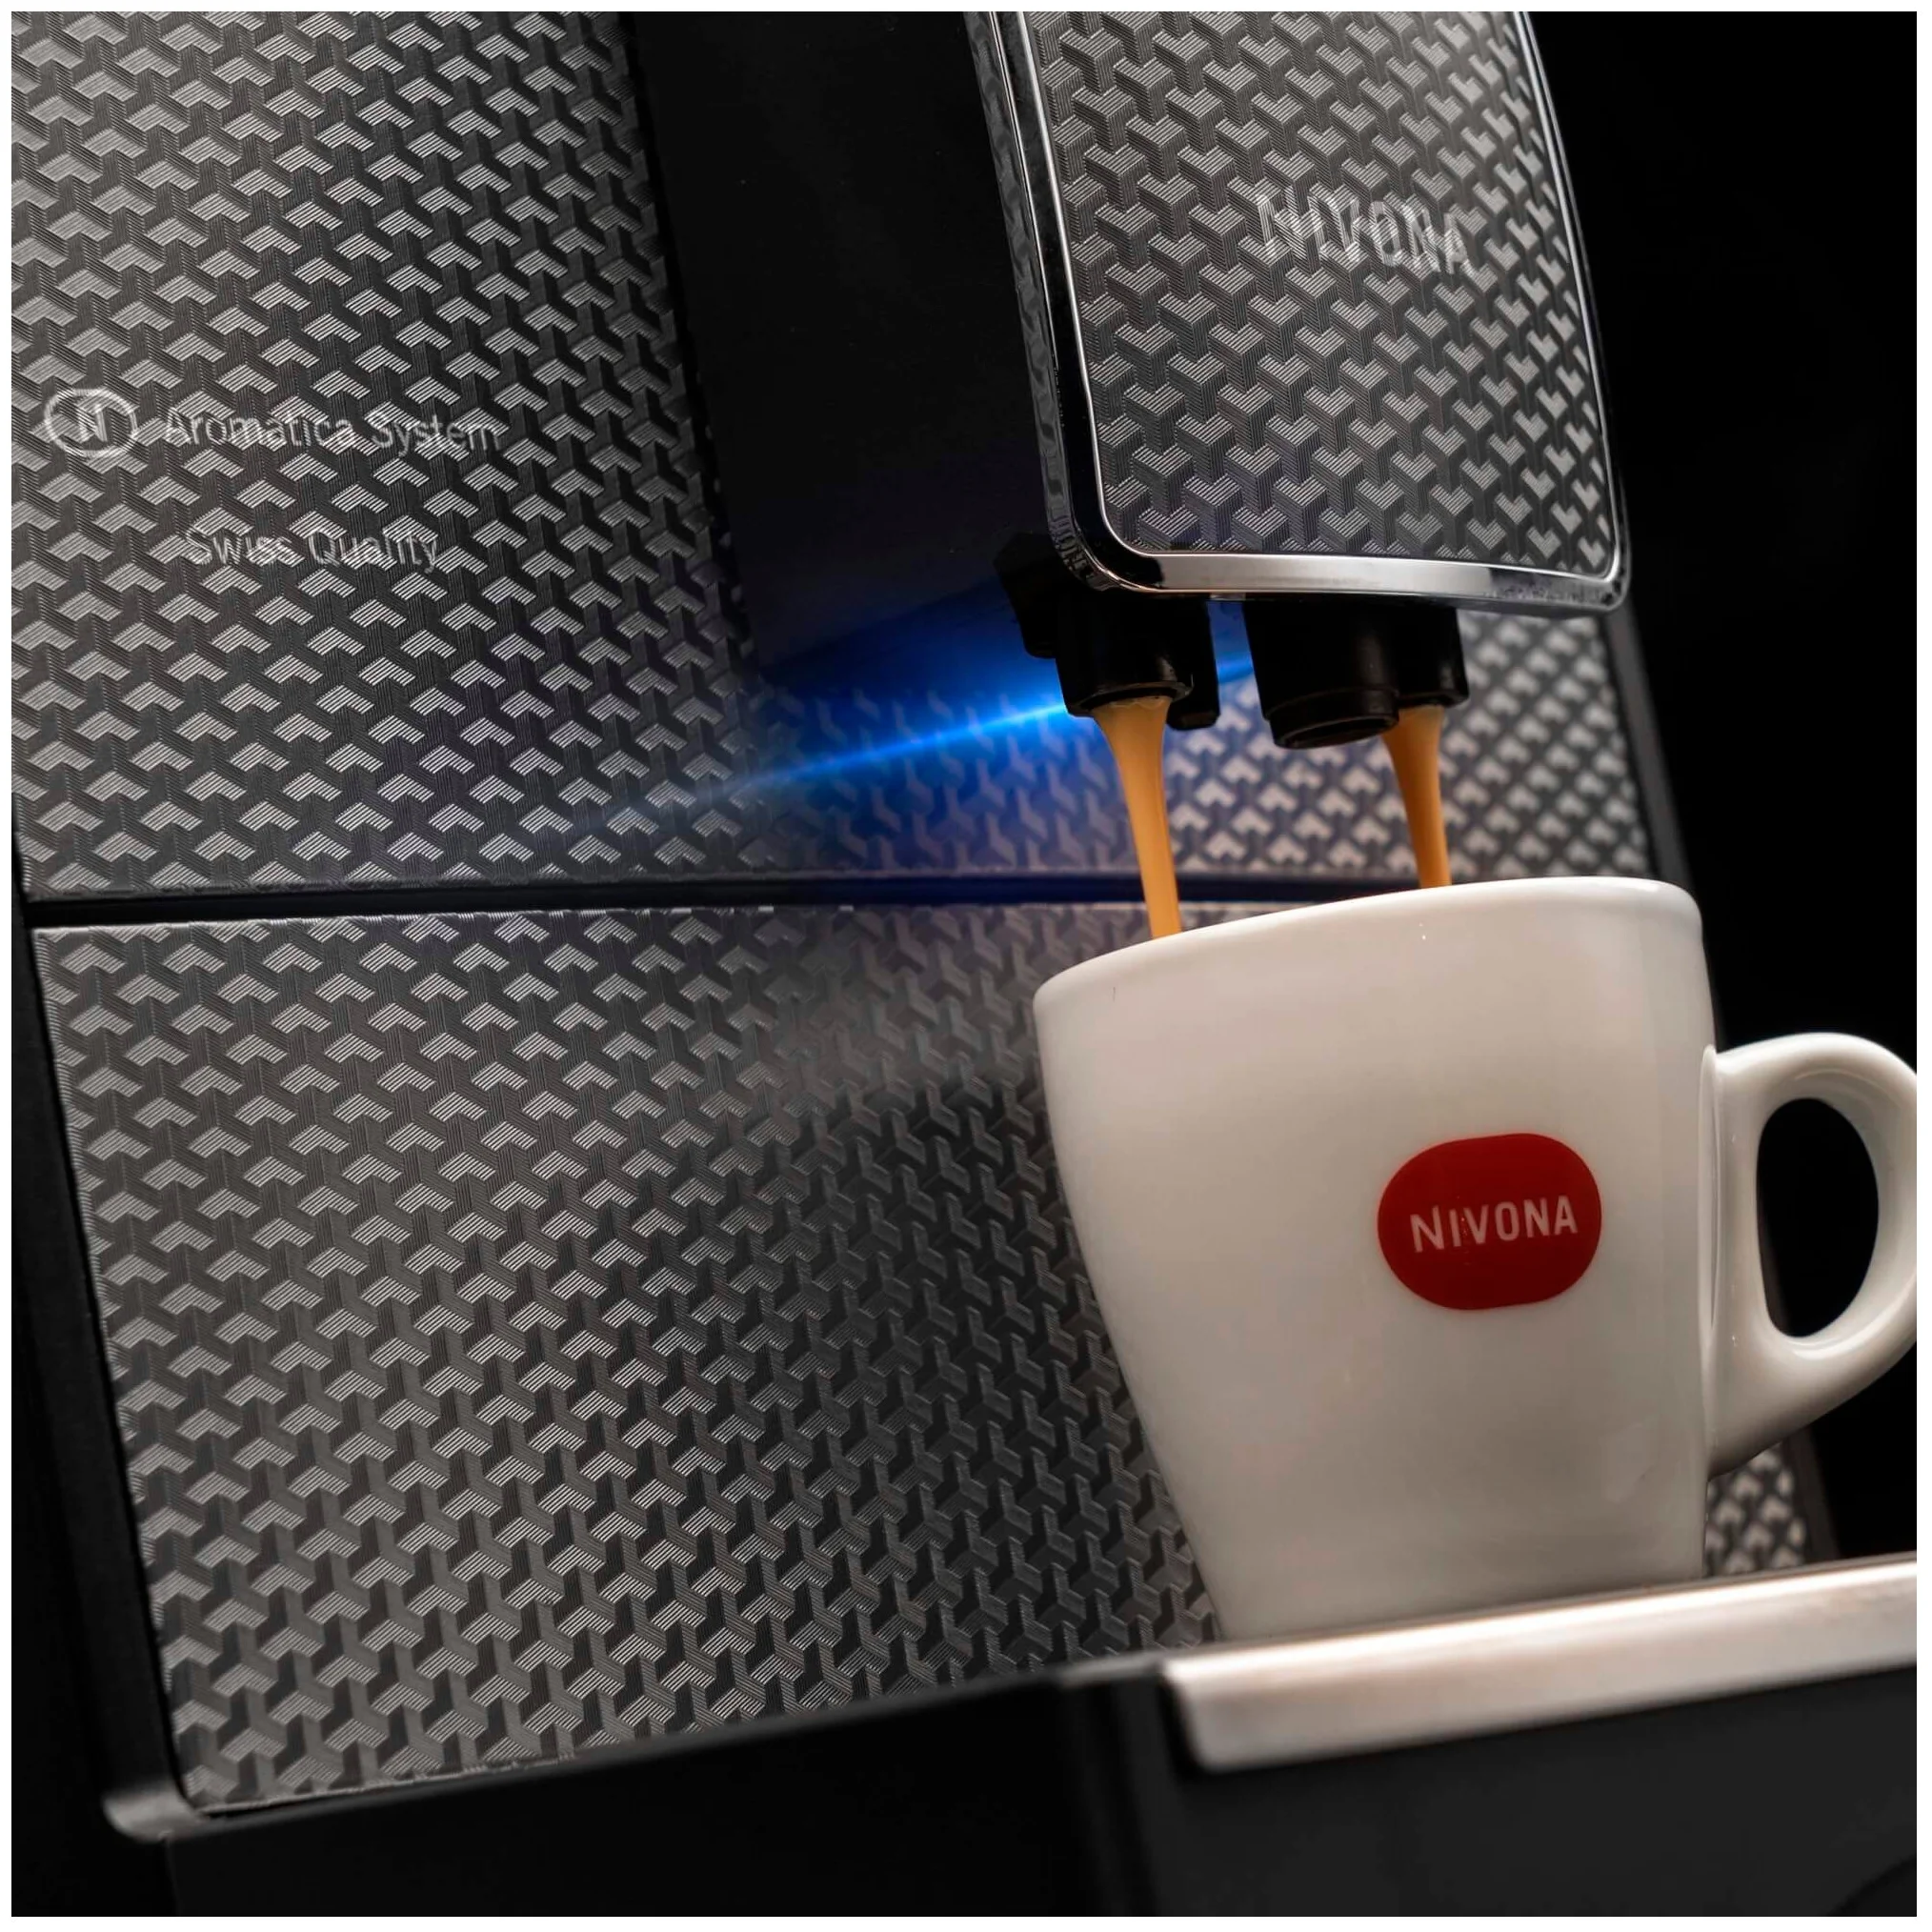 Nivona CafeRomatica 789 - доп. функции: автоотключение при неиспользовании, подогрев чашек, автоматическая декальцинация, подача горячей воды